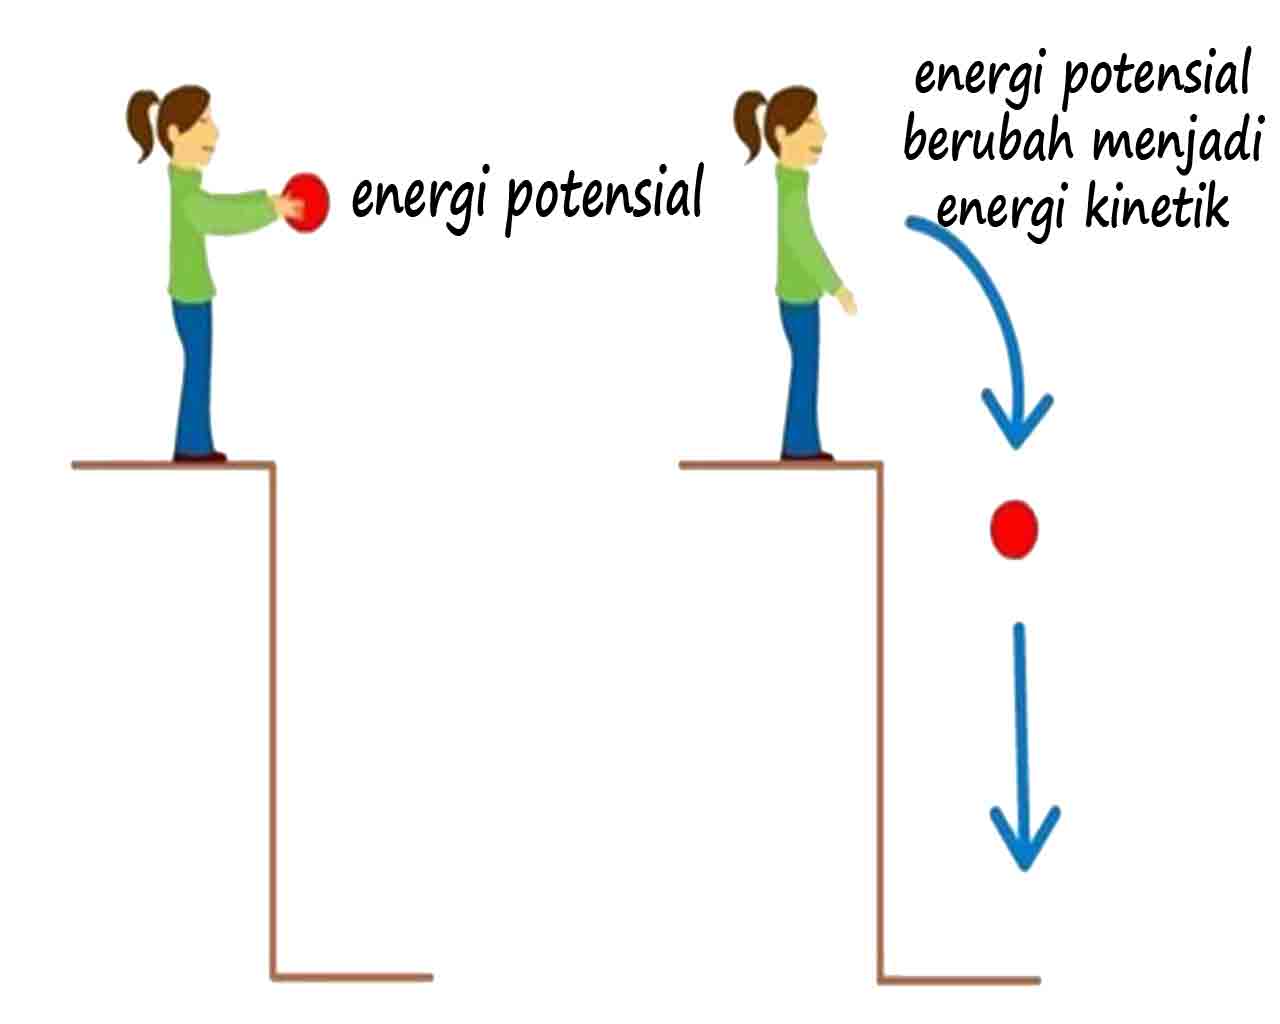 Pengertian energi potensial dan pengertian energi kinetik